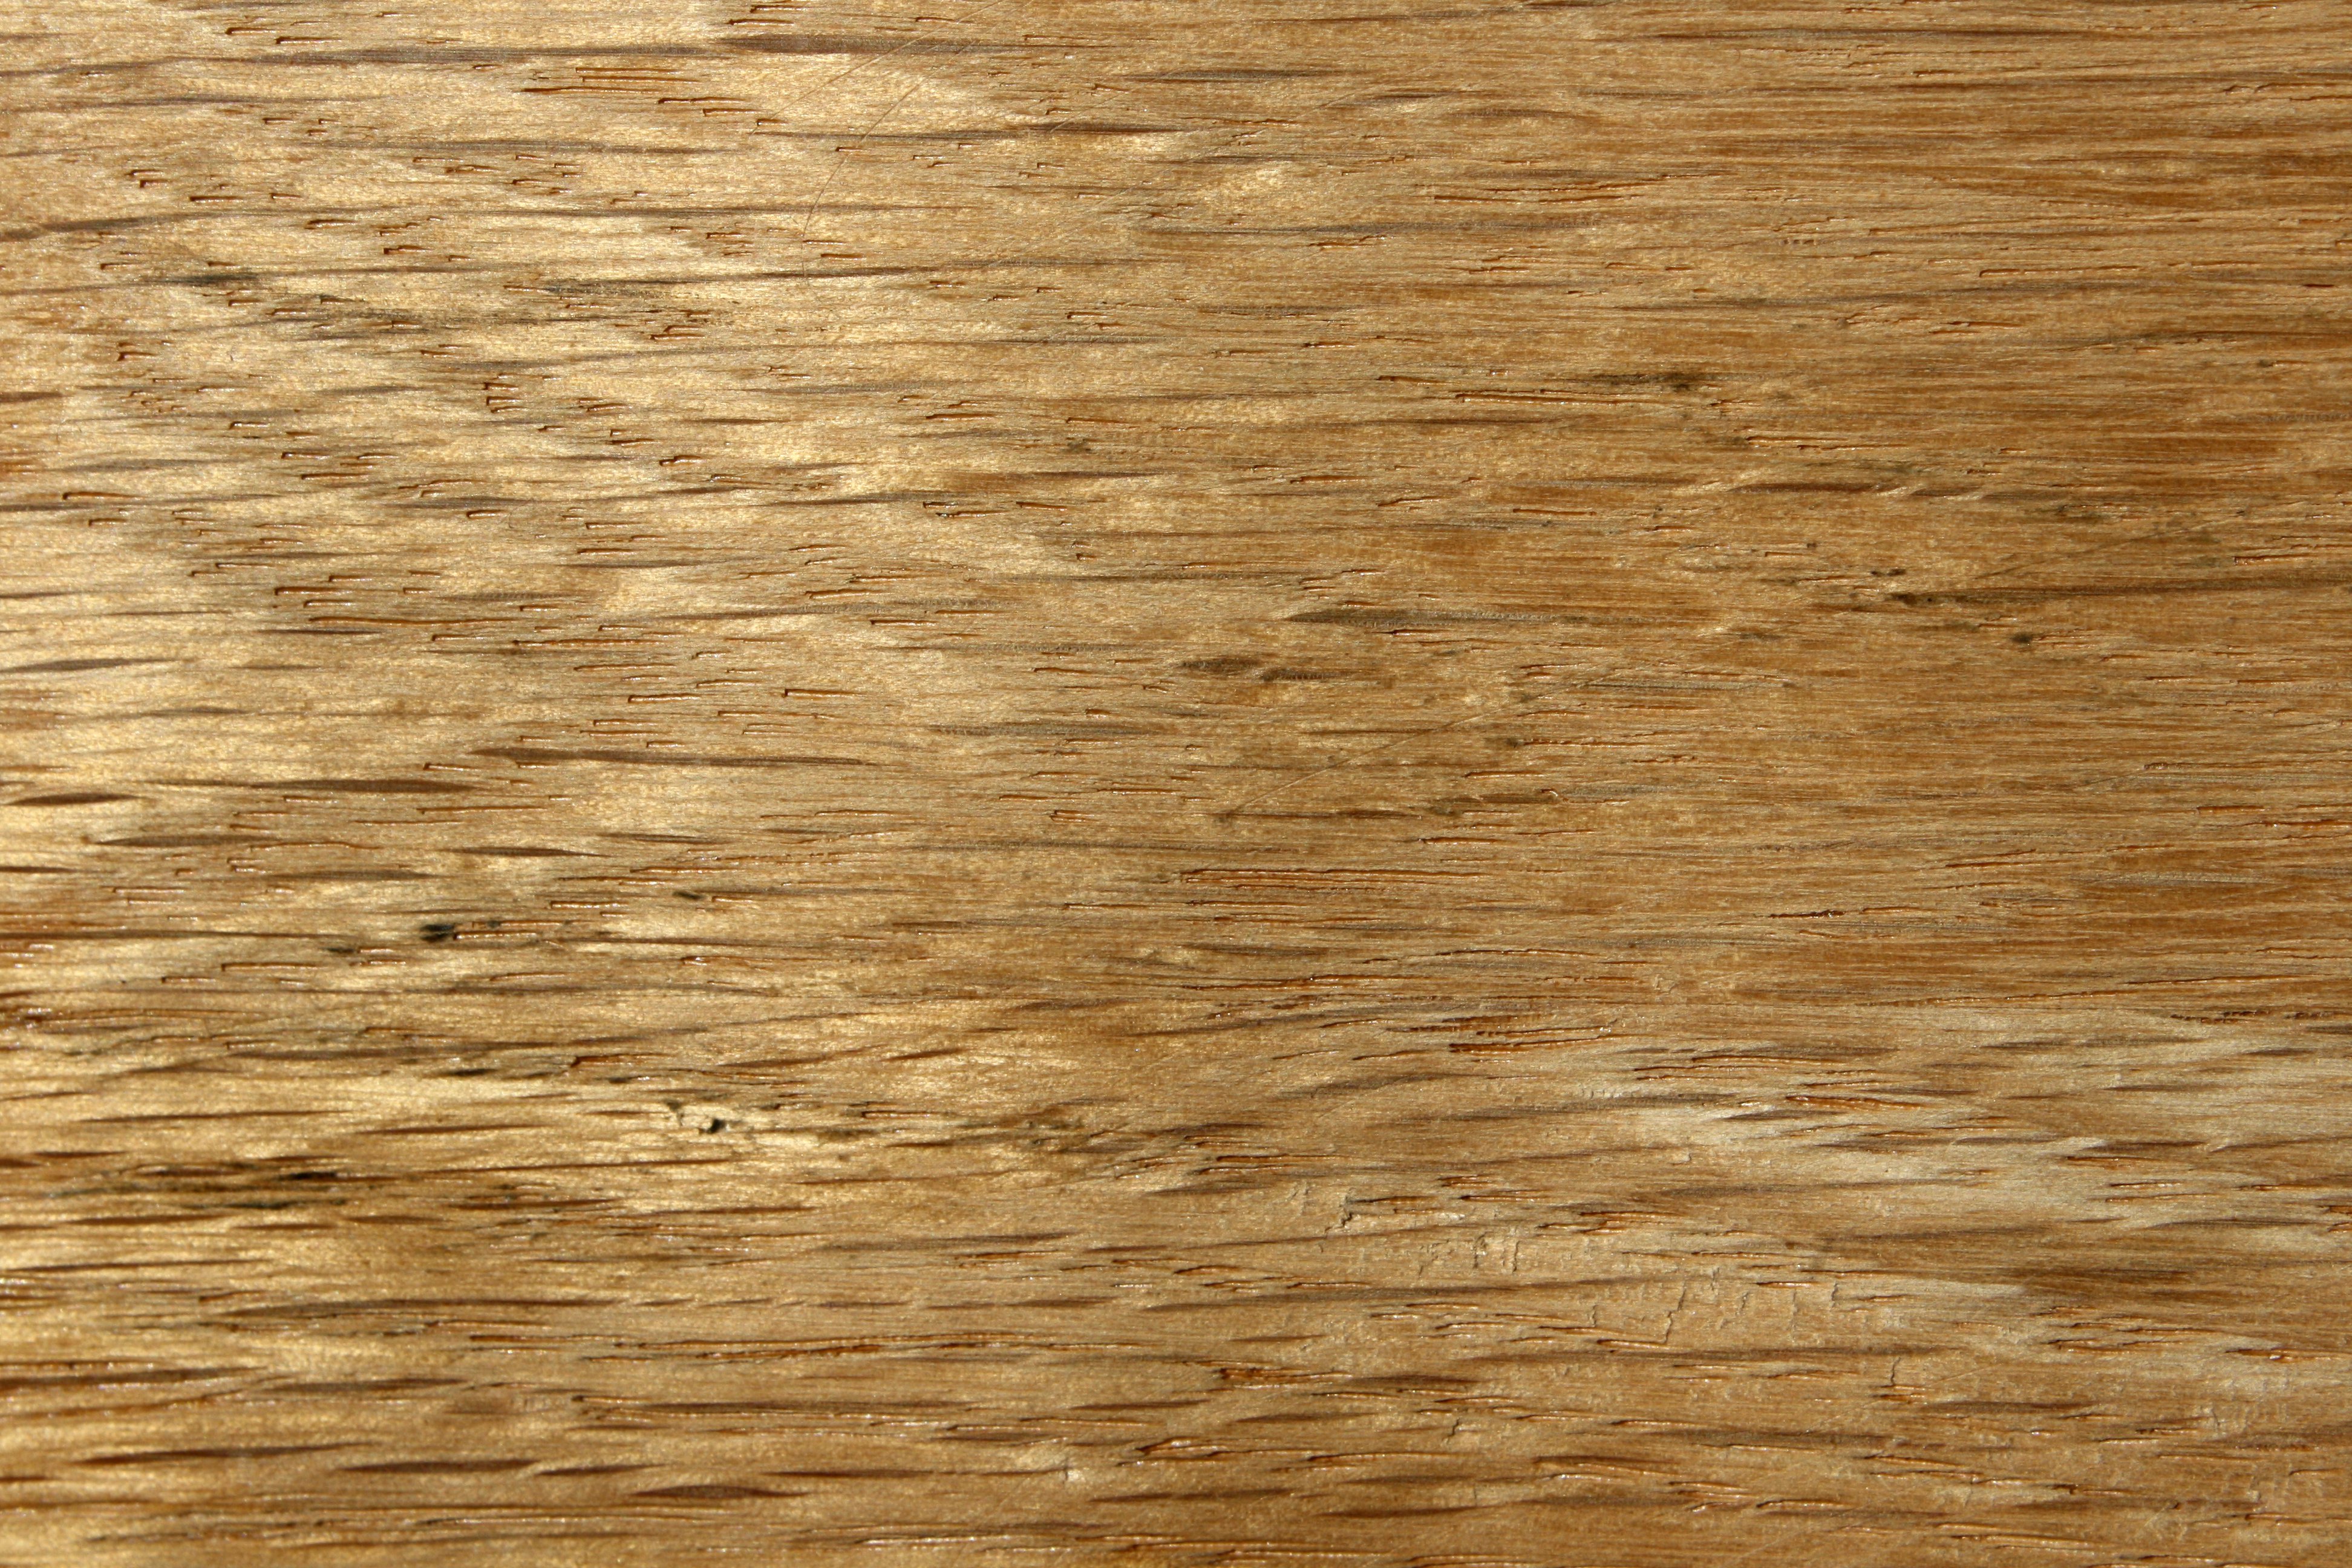 Oak Wood Grain Texture